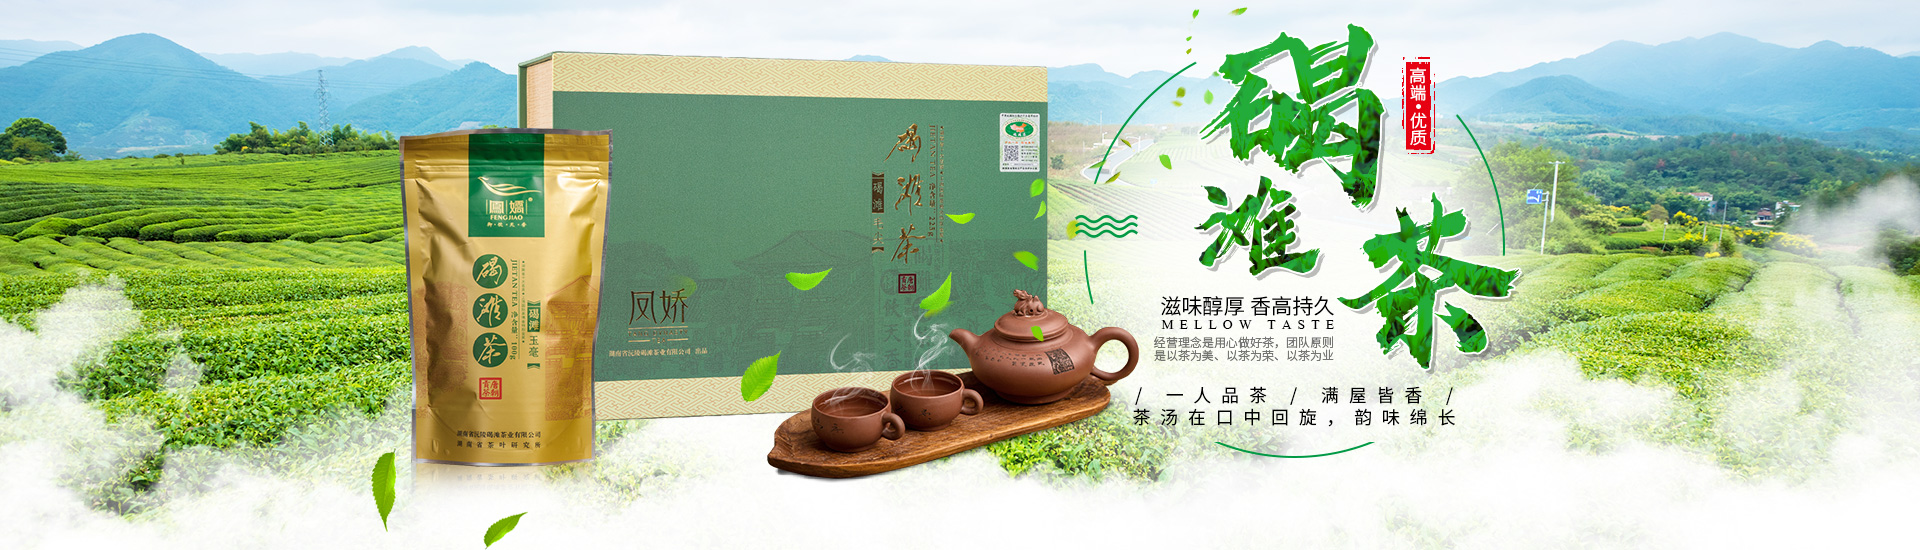 湖南省沅陵碣滩茶业有限公司_沅陵碣滩茶|茶叶加工销售|茶文化传播